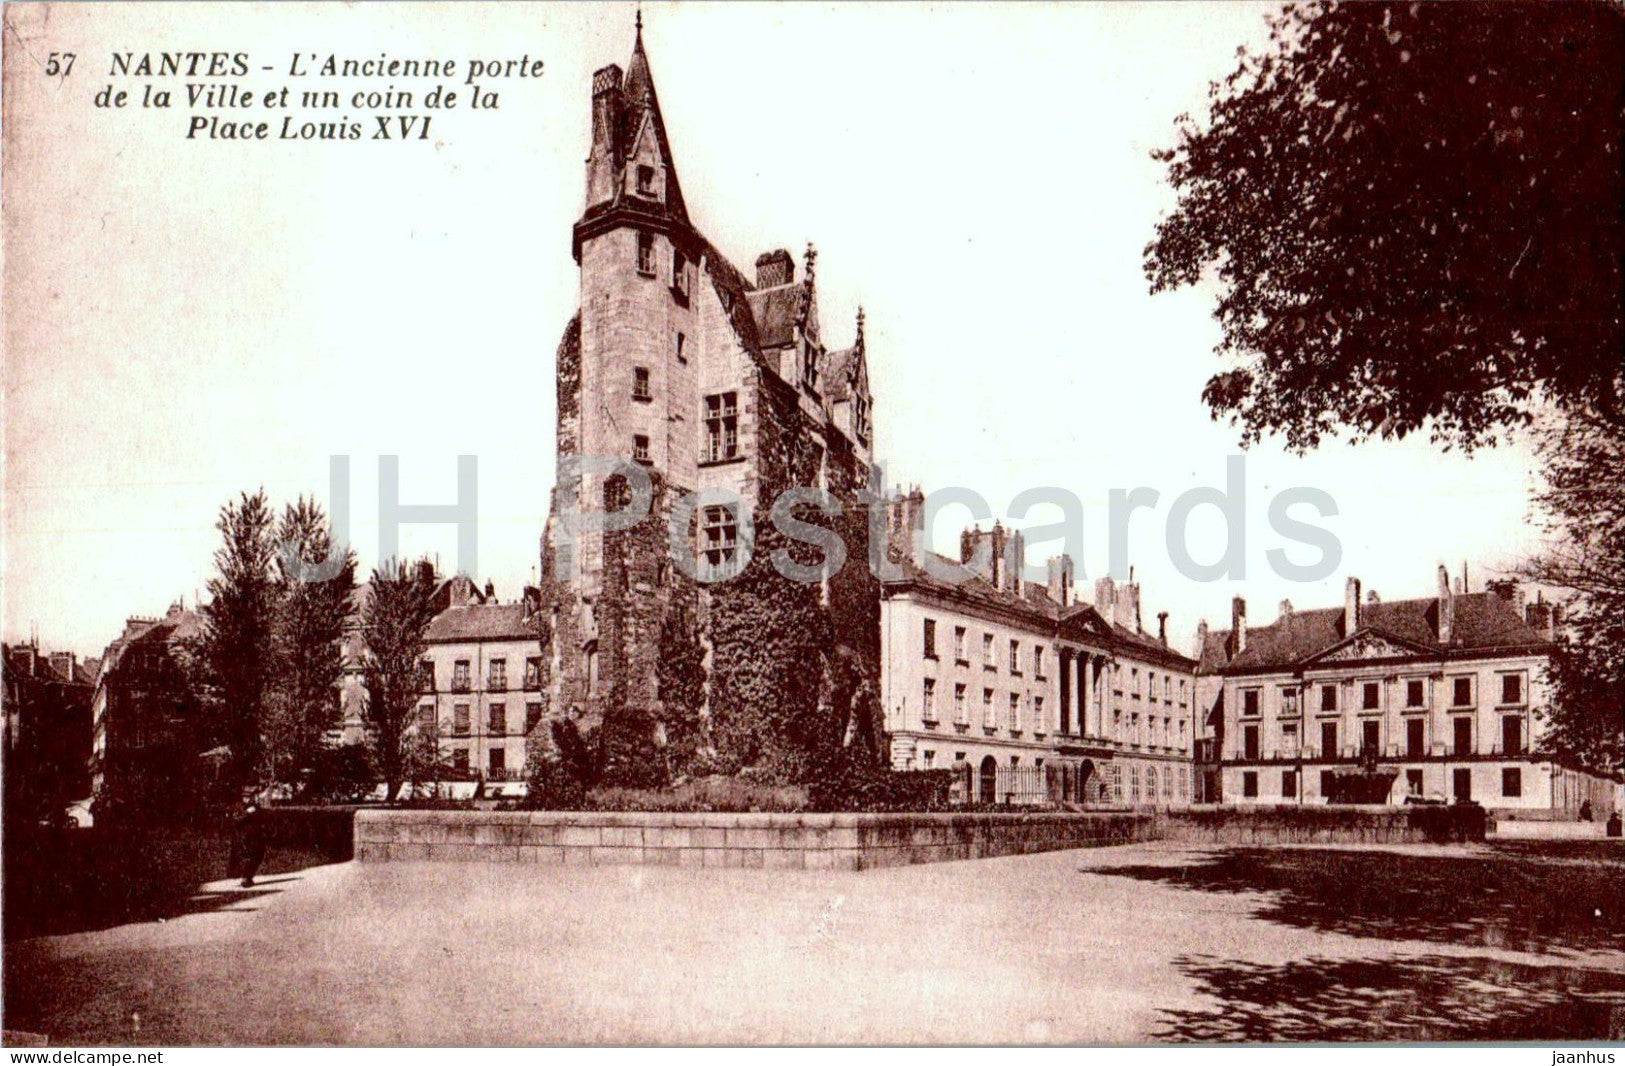 Nantes - L'Ancienne porte de la Ville et un coin de la Place Louis XVI - 57 - old postcard - France - unused - JH Postcards